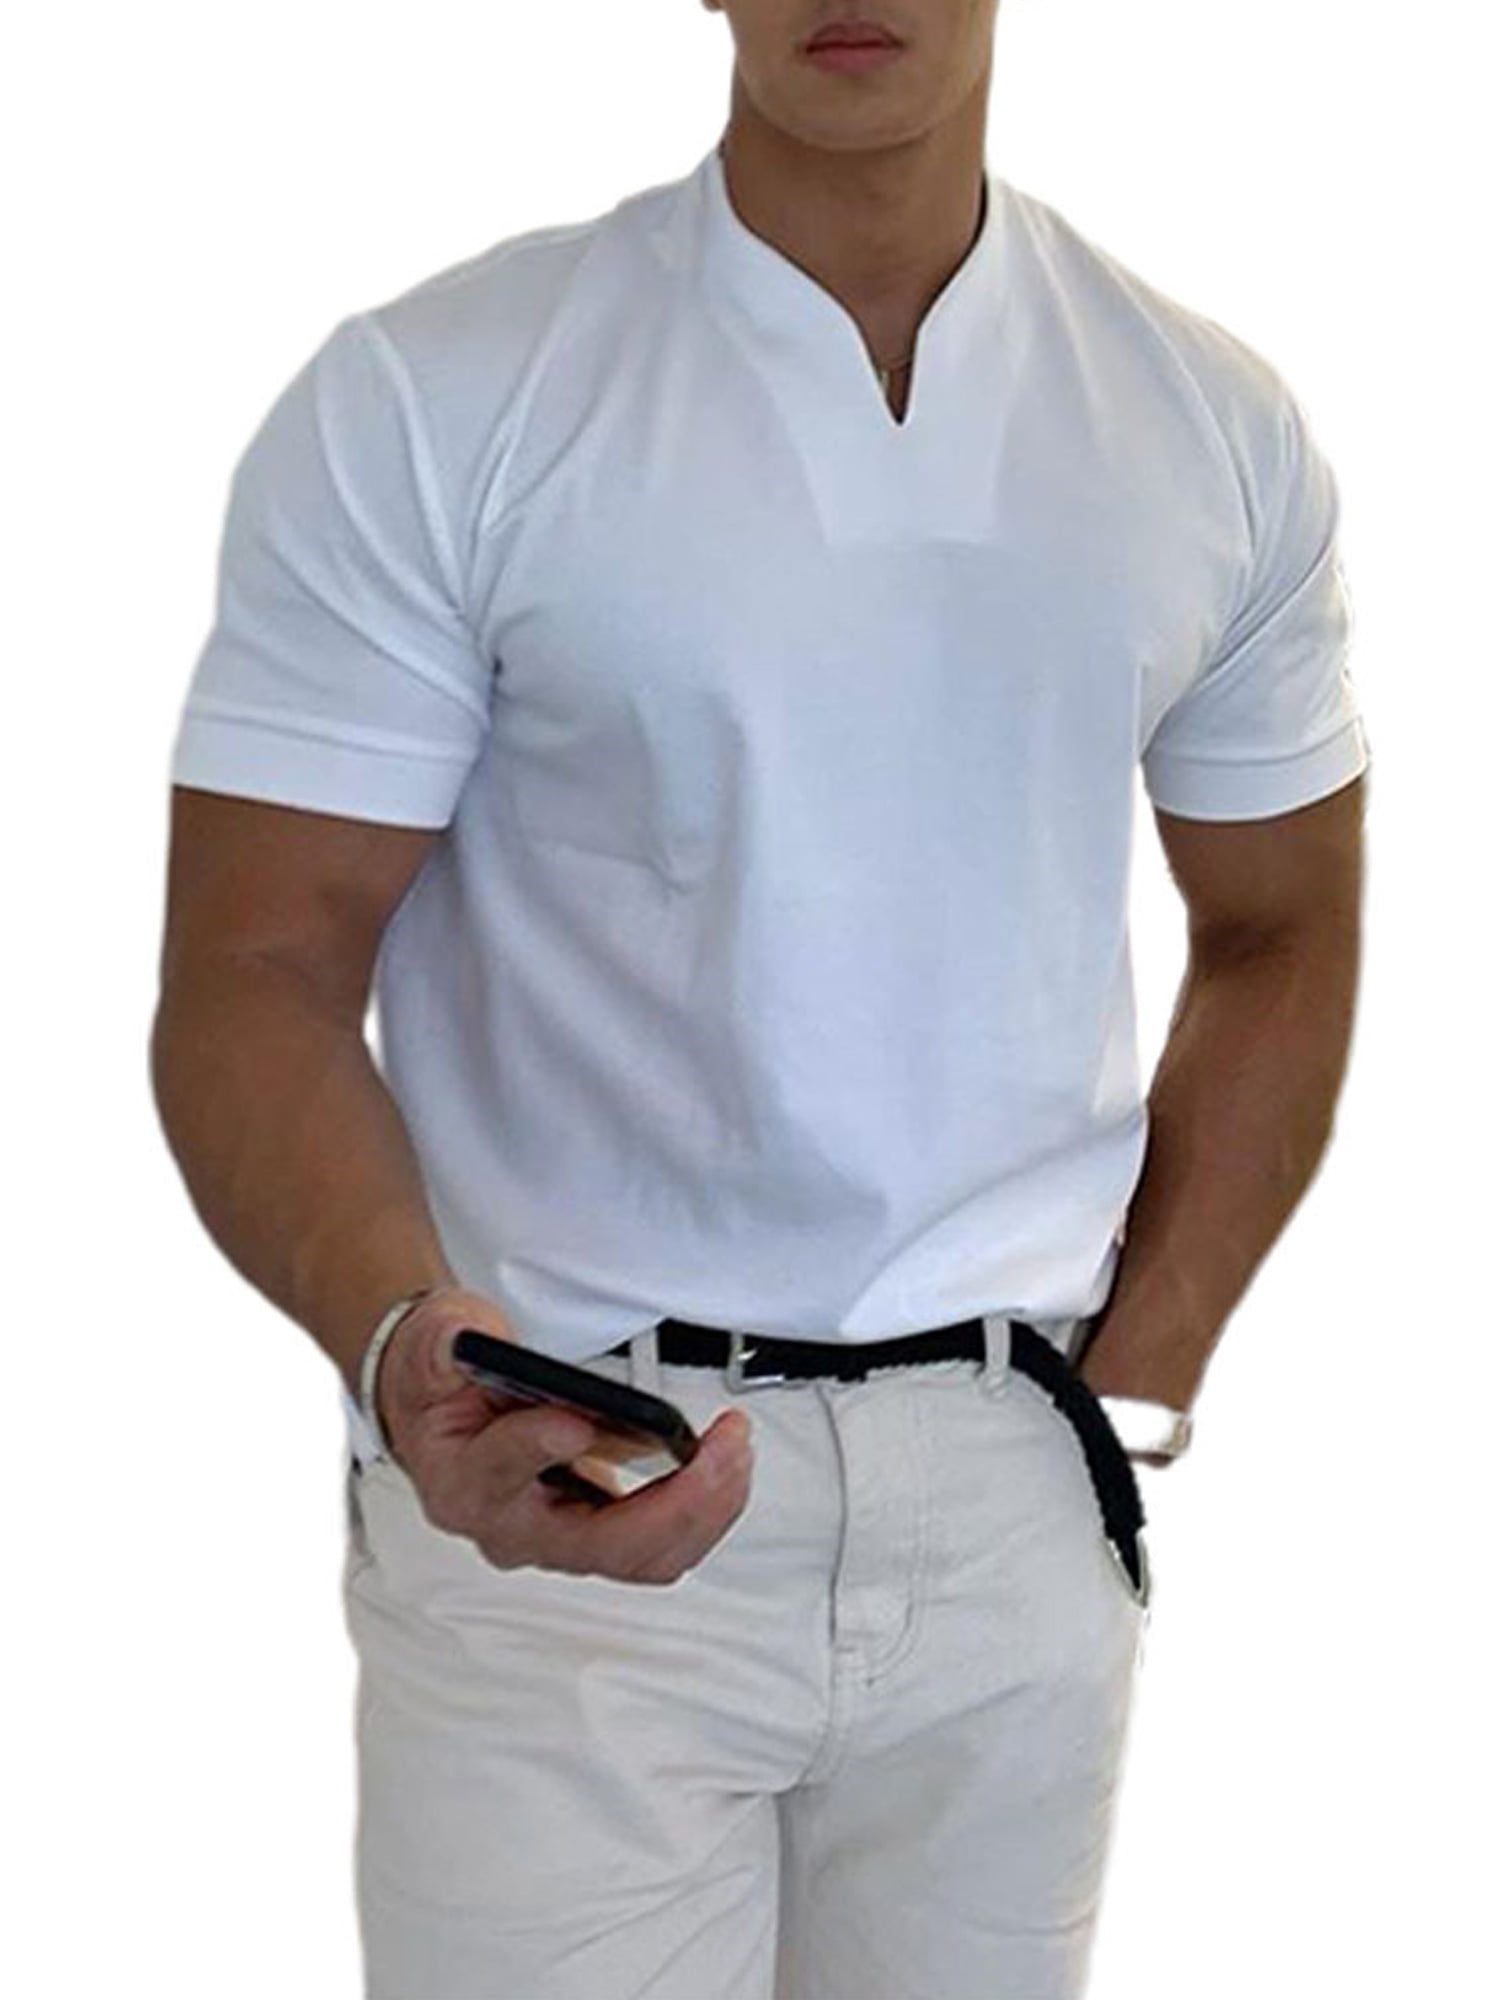 Men Summer Short Sleeve V-Neck Casual Tee Cotton Blend Top T-Shirt Blouse S-3XL 